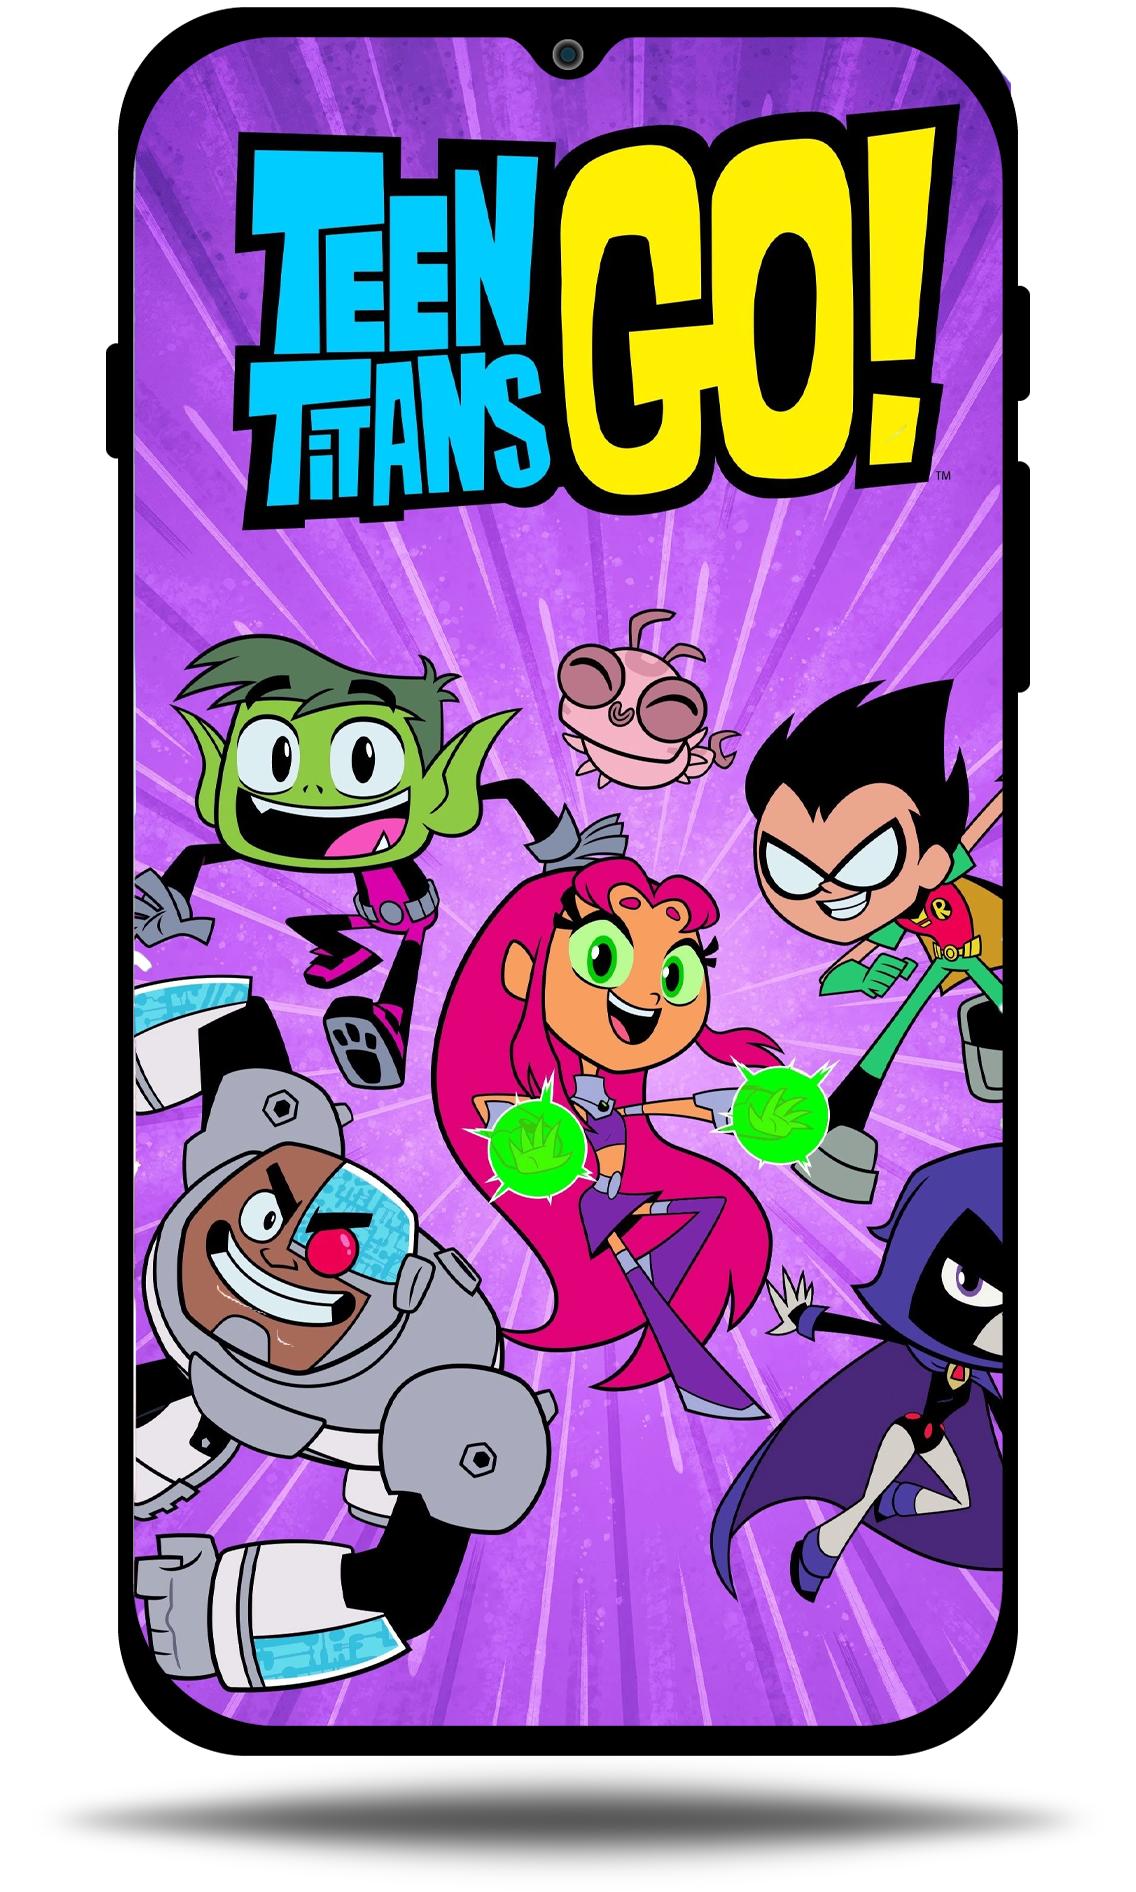 Teen Titans GO 4k Wallpaper APK voor Android Download